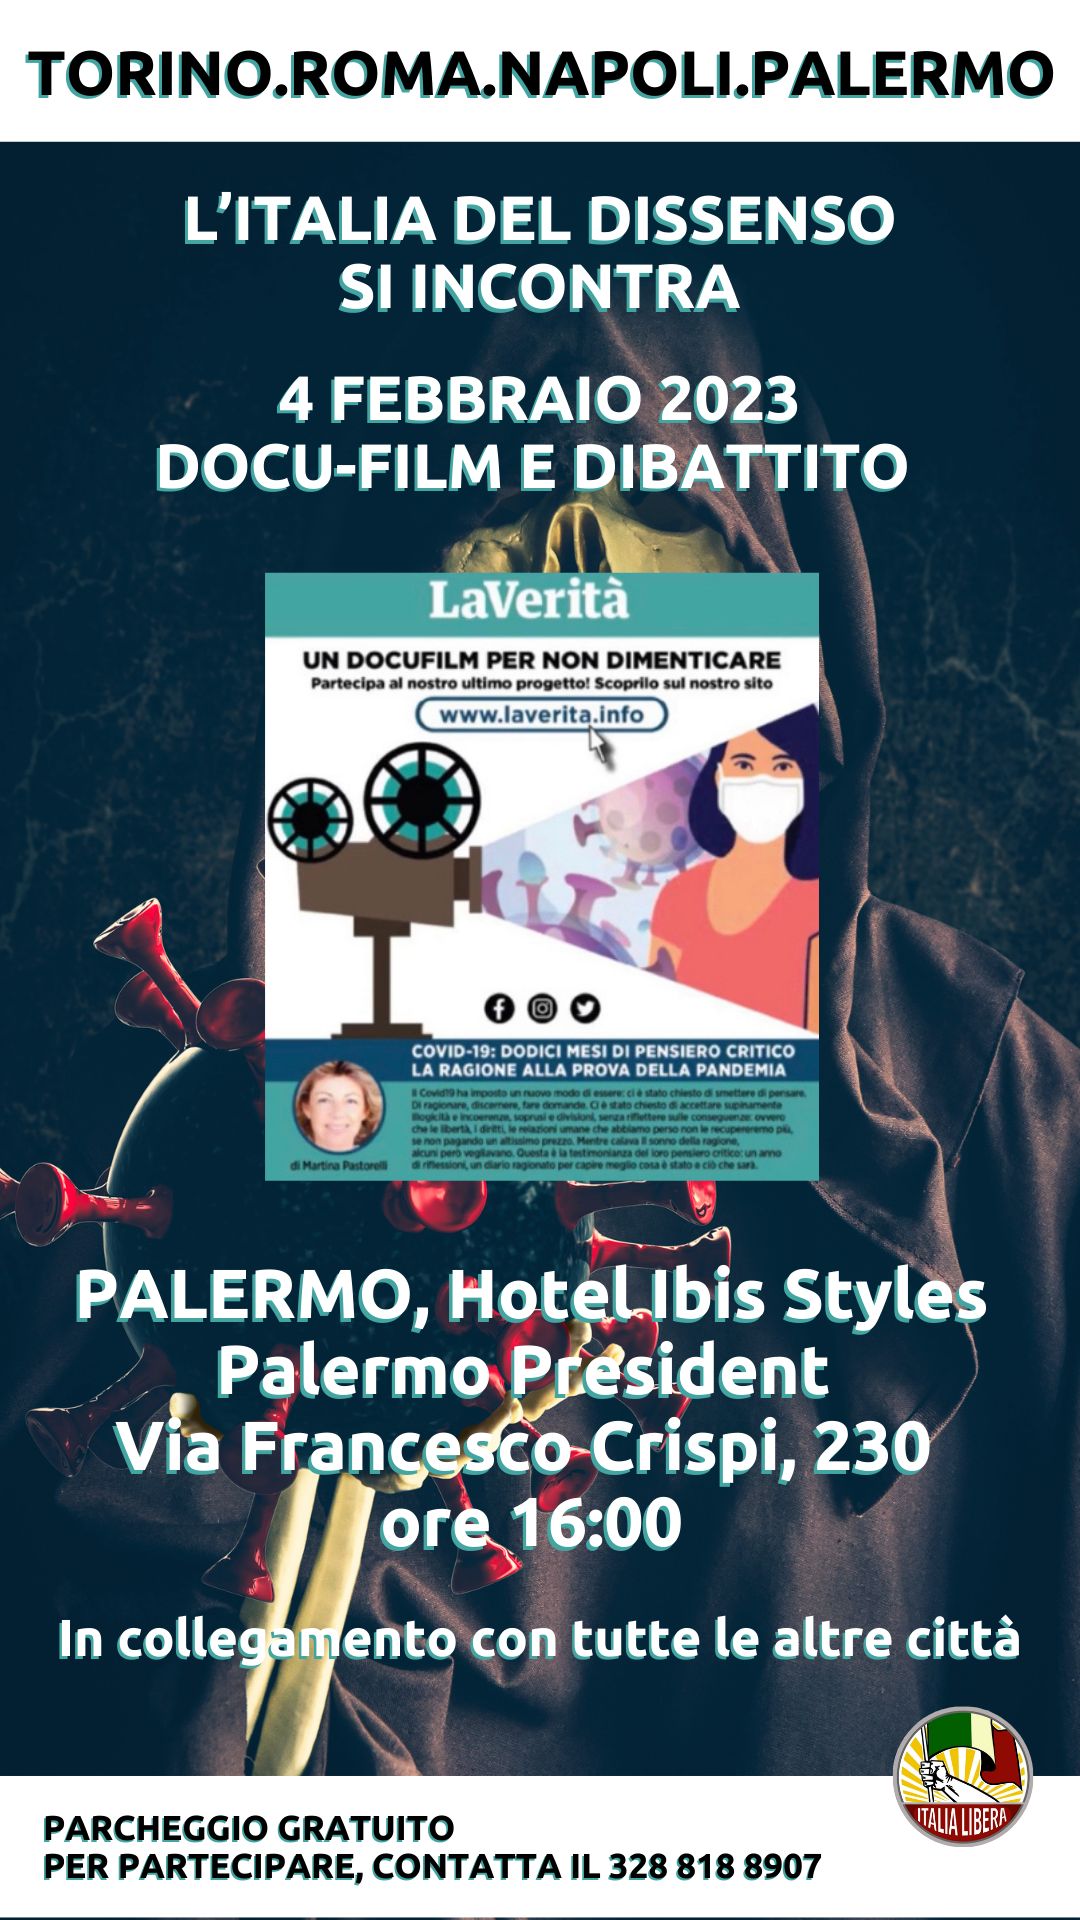 Sabato 4 febbraio nelle principali città italiane proietteremo il docu-film "Covid 19, 12 mesi di pensiero critico".